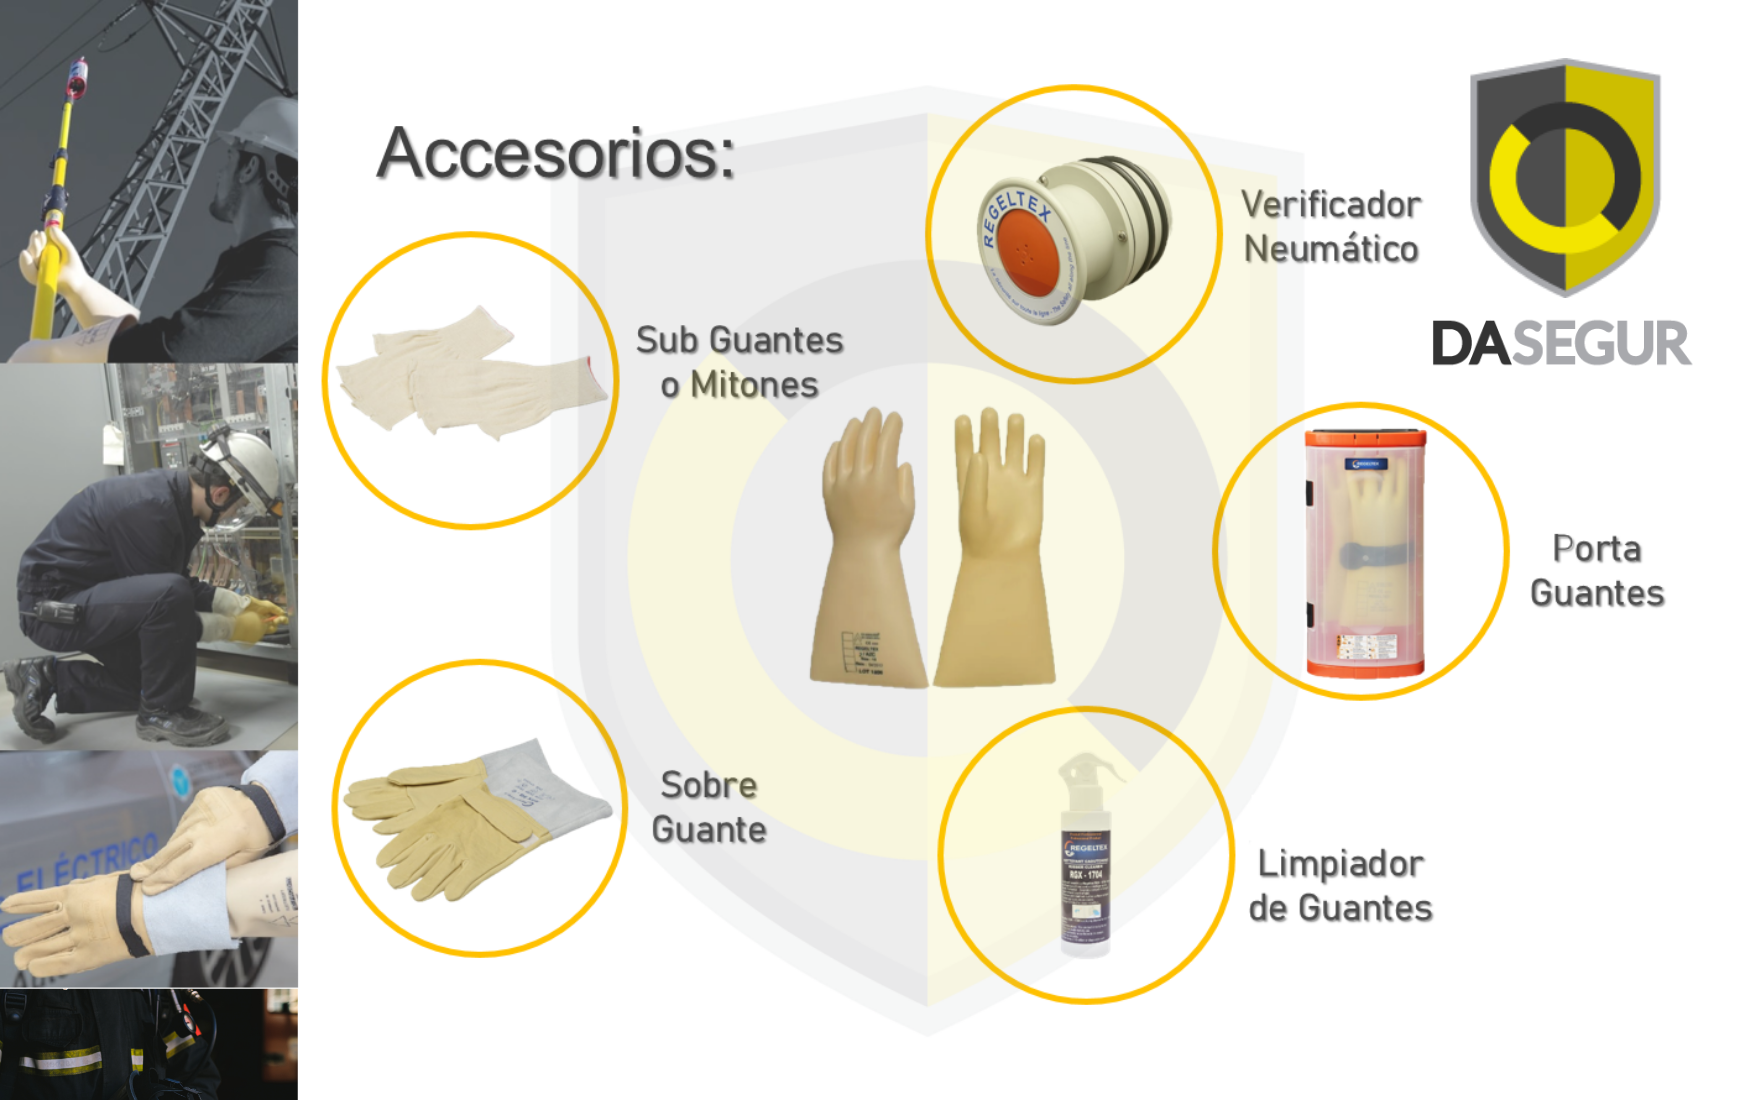 Accesorios complementarios a los guantes dielectricos